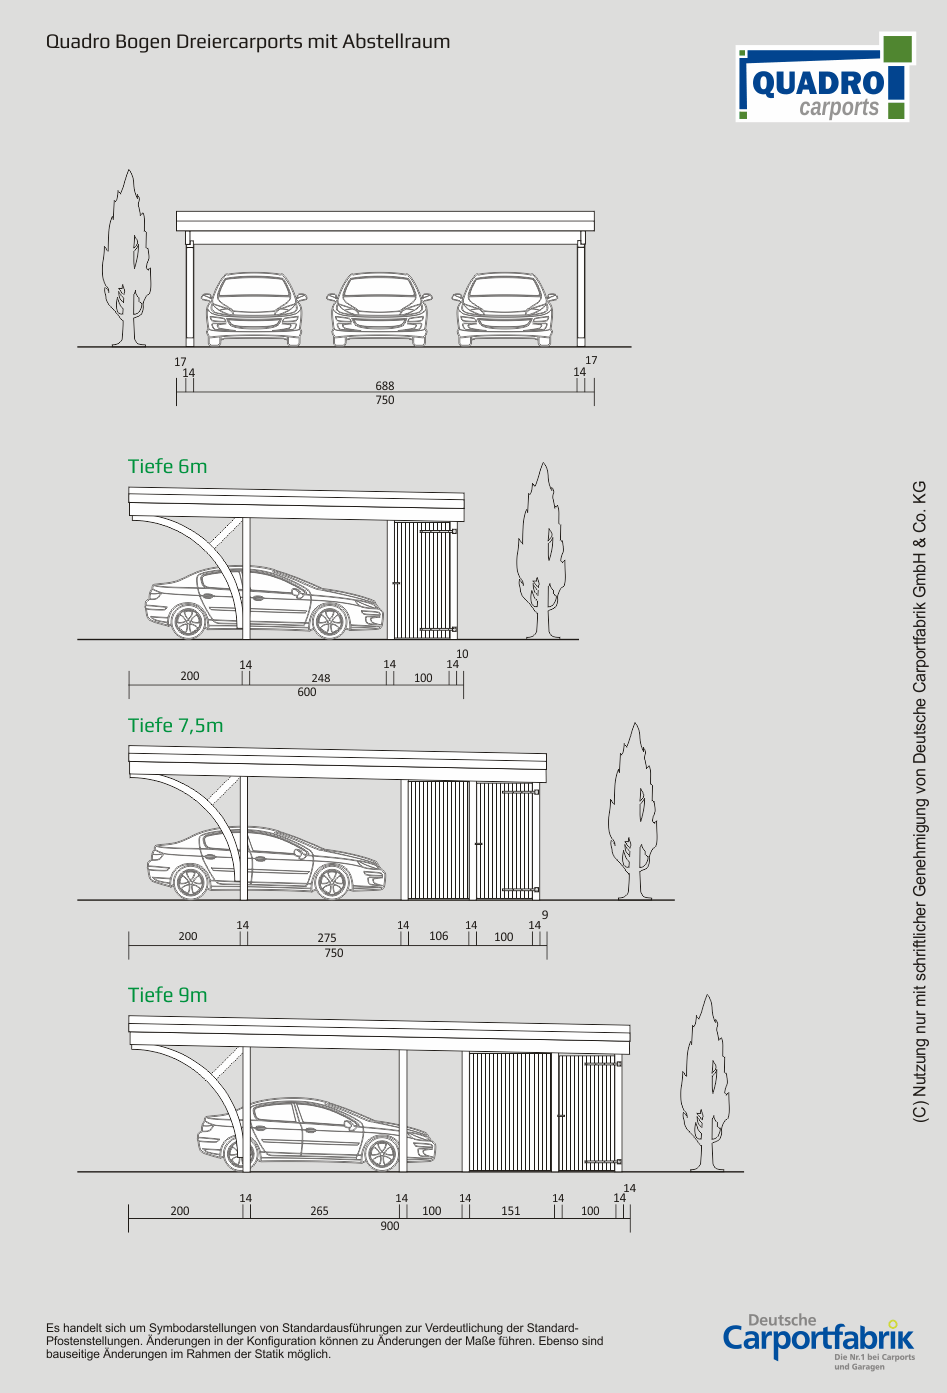 Technische Ansichten QUADRO-Bogen-Carports - Dreiercarport mit Abstellraum